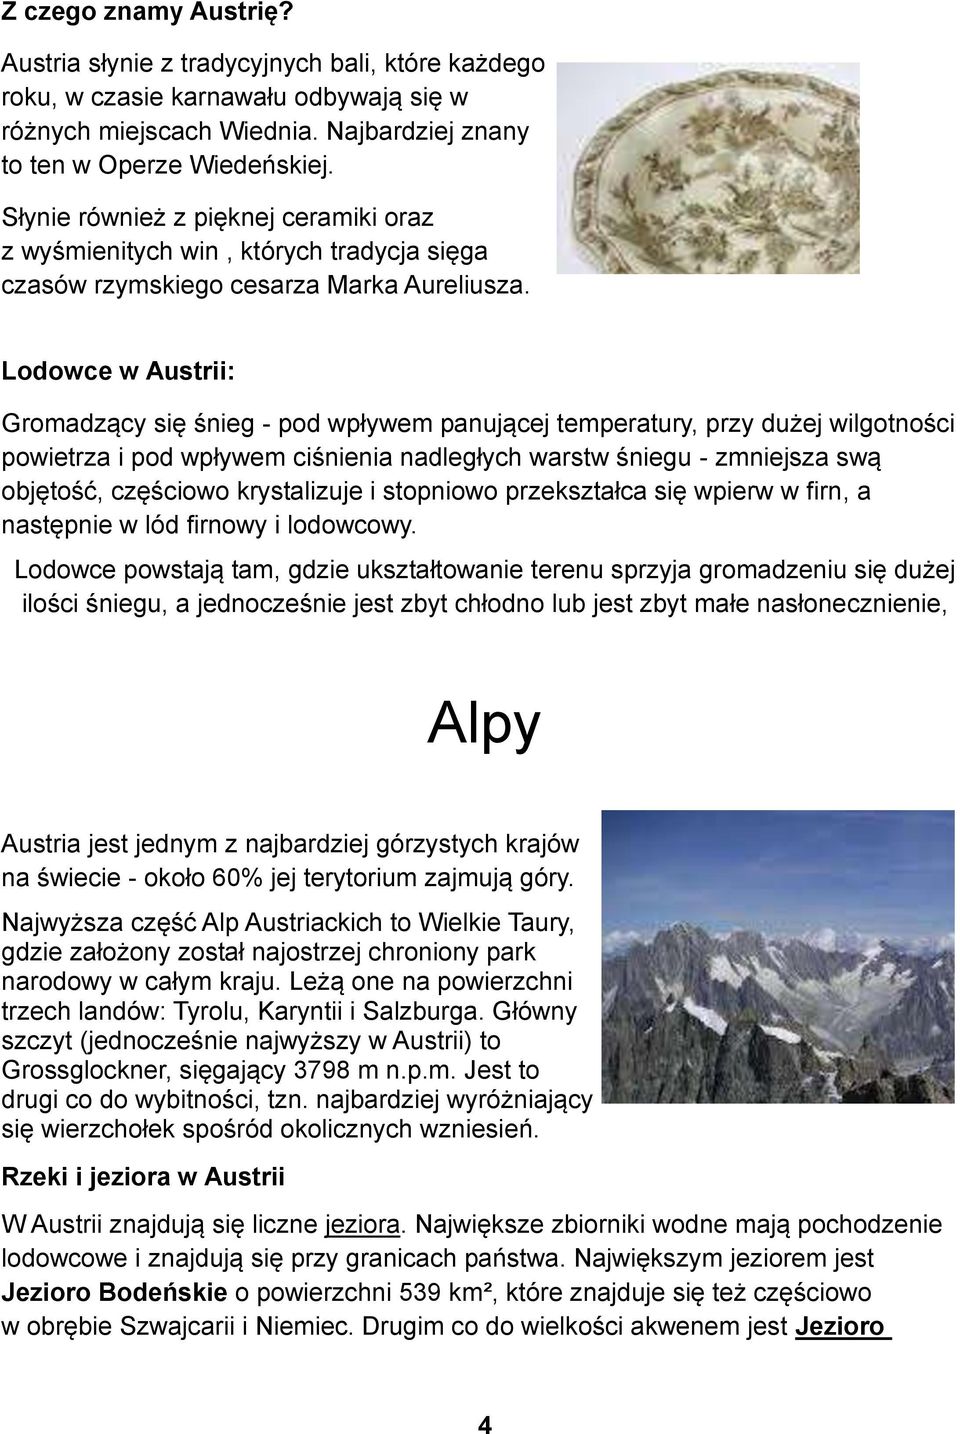 Lodowce w Austrii: Gromadzący się śnieg - pod wpływem panującej temperatury, przy dużej wilgotności powietrza i pod wpływem ciśnienia nadległych warstw śniegu - zmniejsza swą objętość, częściowo